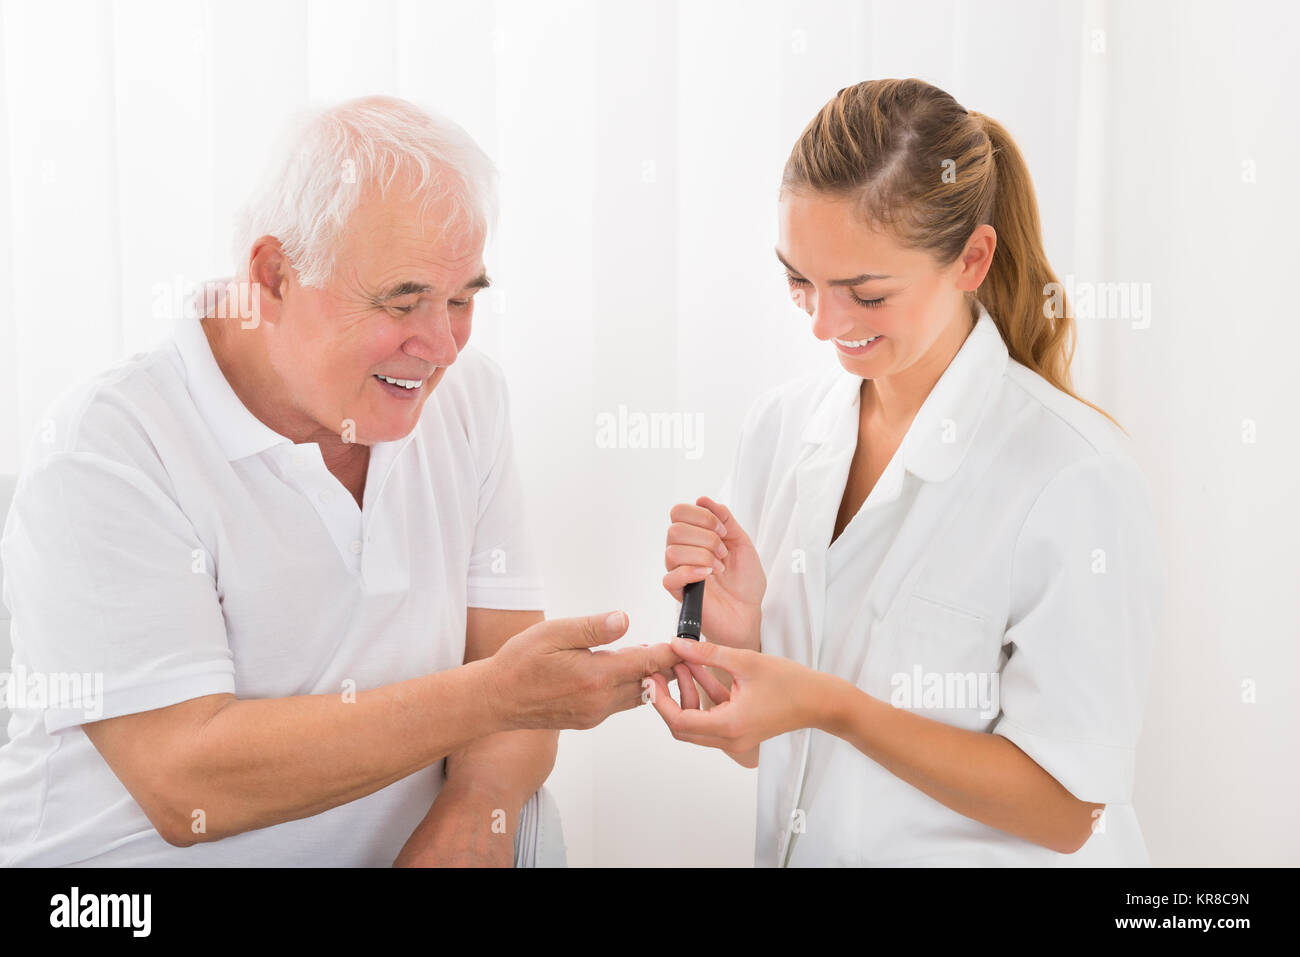 Arzt mit lanzettfischchens am Finger des Patienten Stockfoto